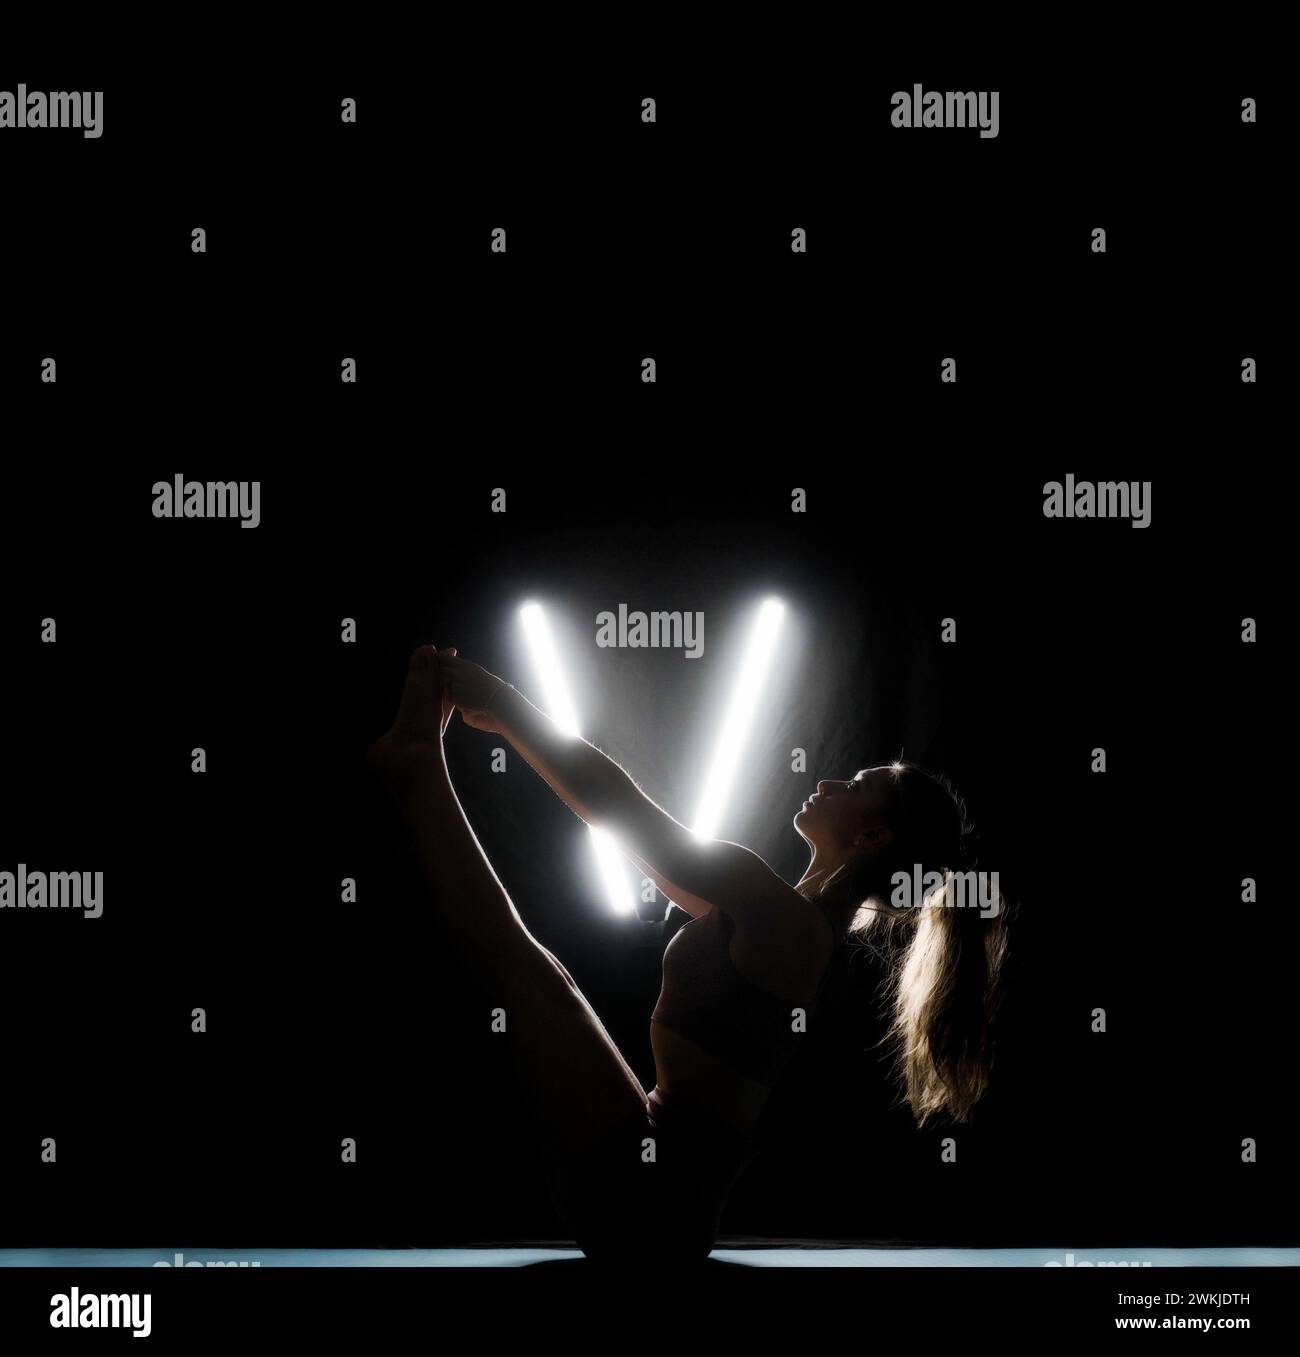 Une femme silhouette étire ses jambes dans une pose de yoga sur un fond sombre éclairé par des lumières blanches en forme de V néon. Banque D'Images